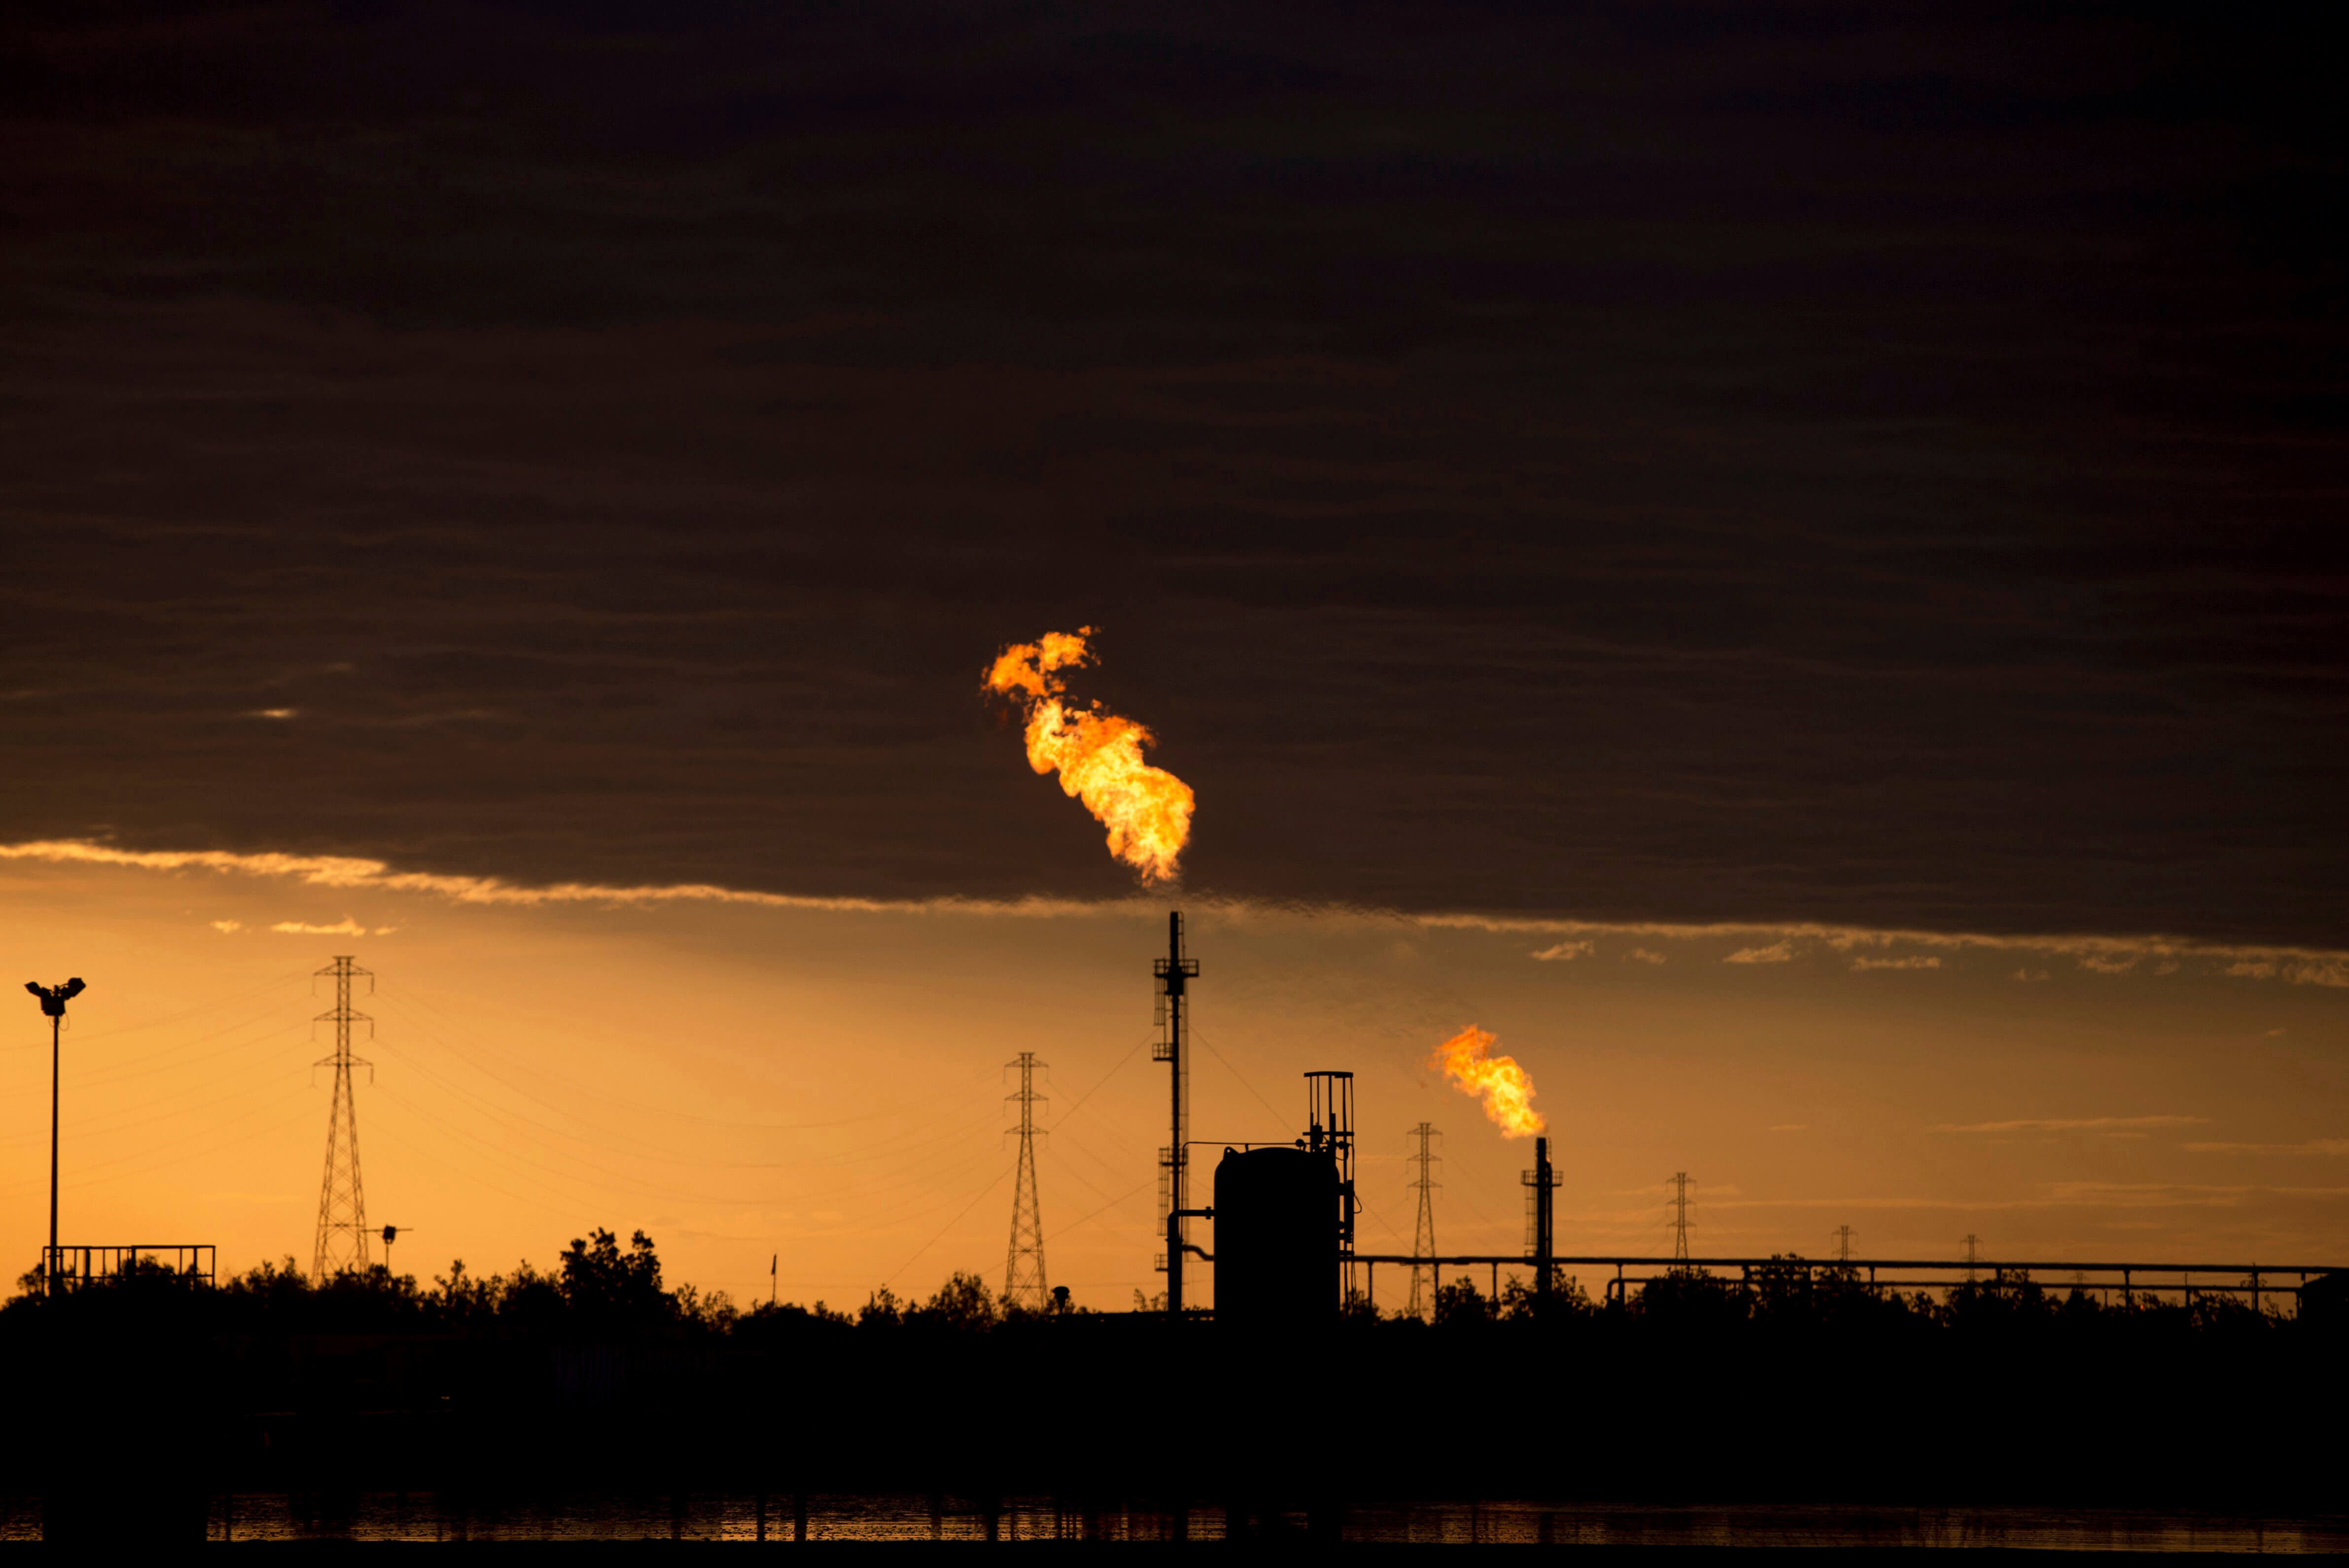 Baja precio de petróleo Brent, incrementa suministro de OPEP